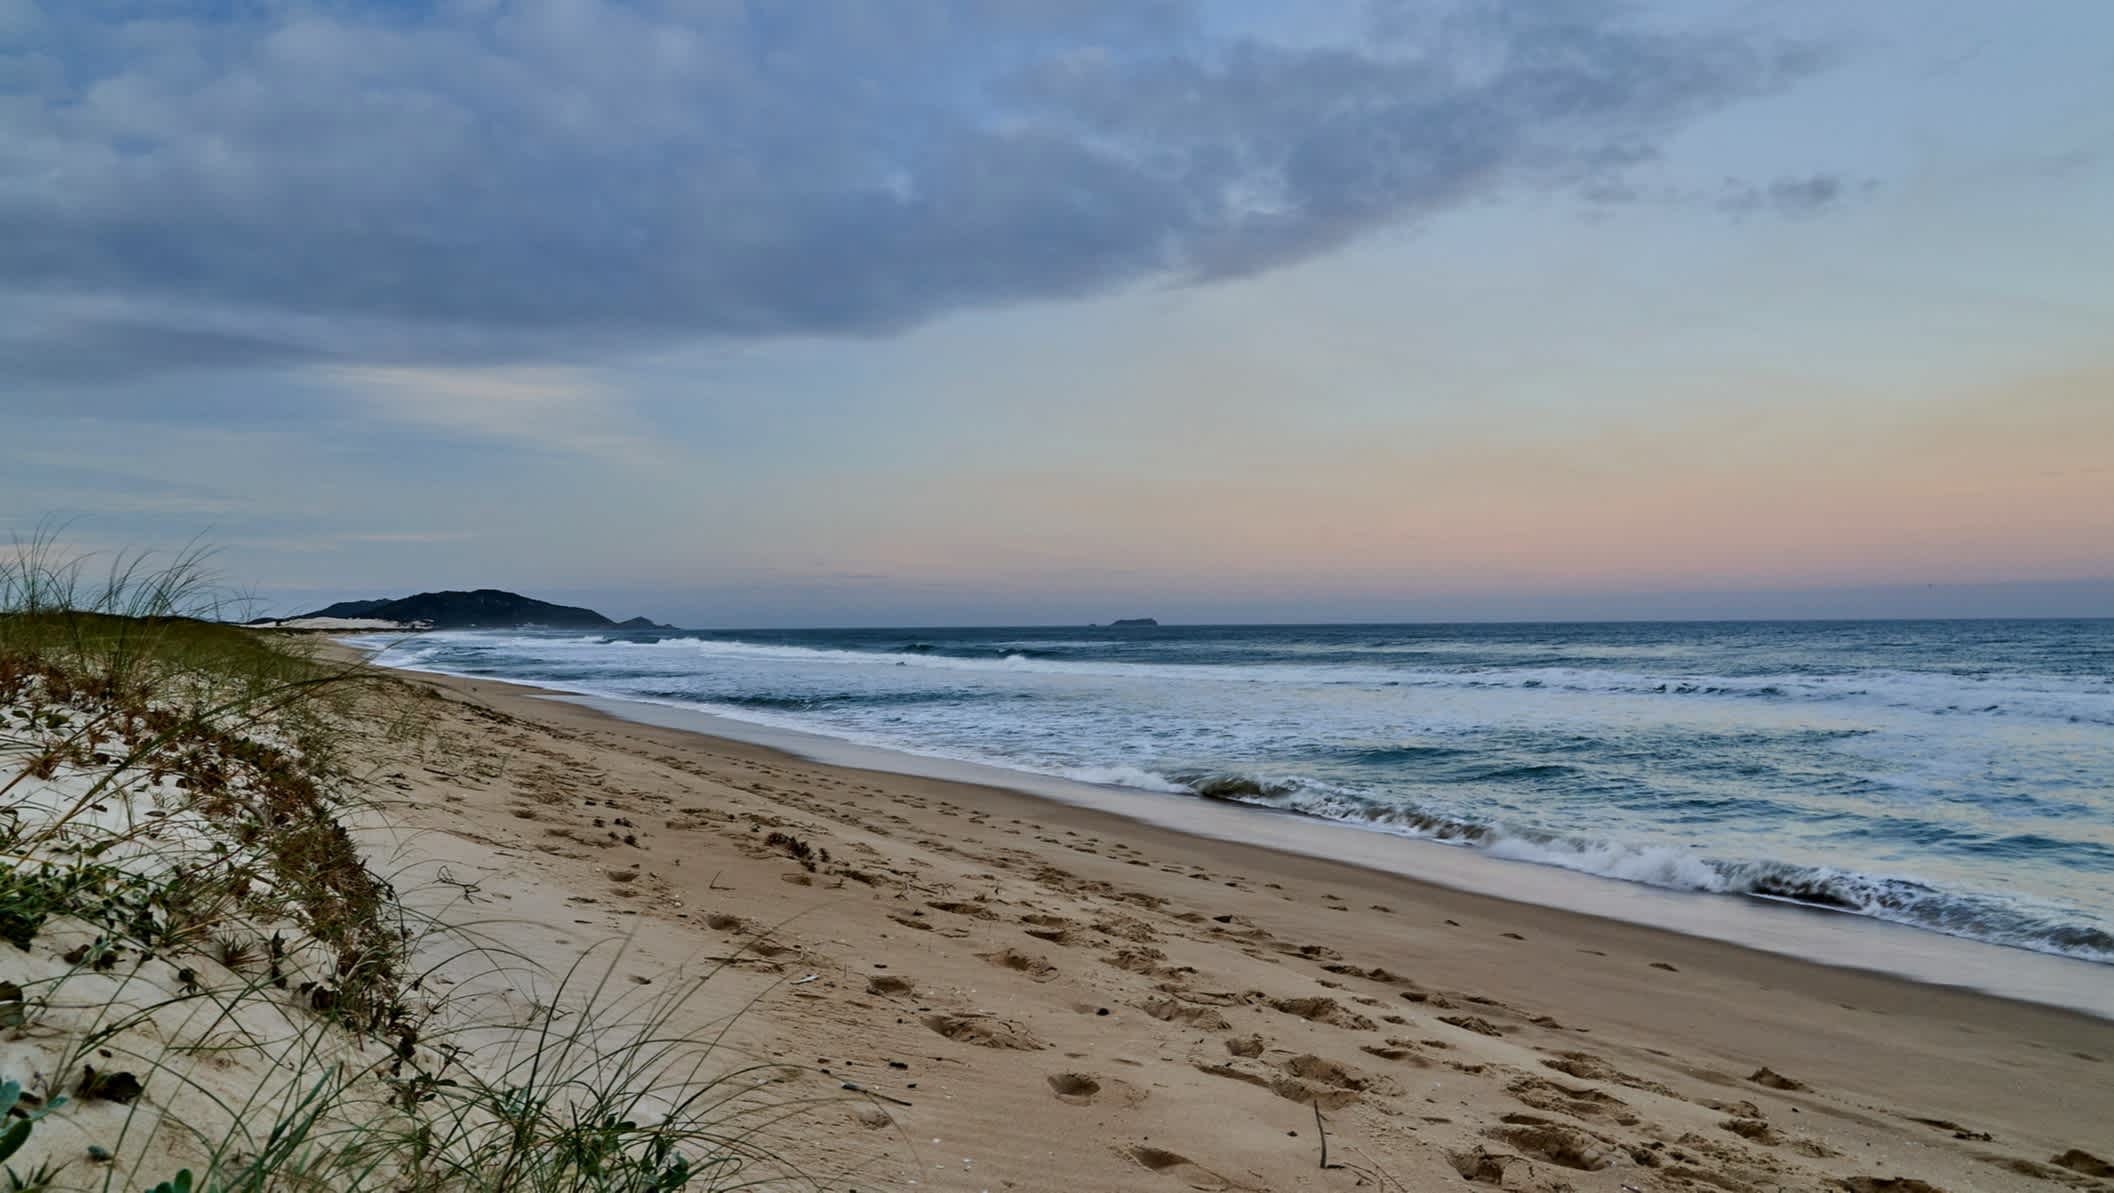 Plage de sable Lagoinha do Leste sur l'île de Santa Catarina, près de Florianopolis, Brésil, au soleil couchant